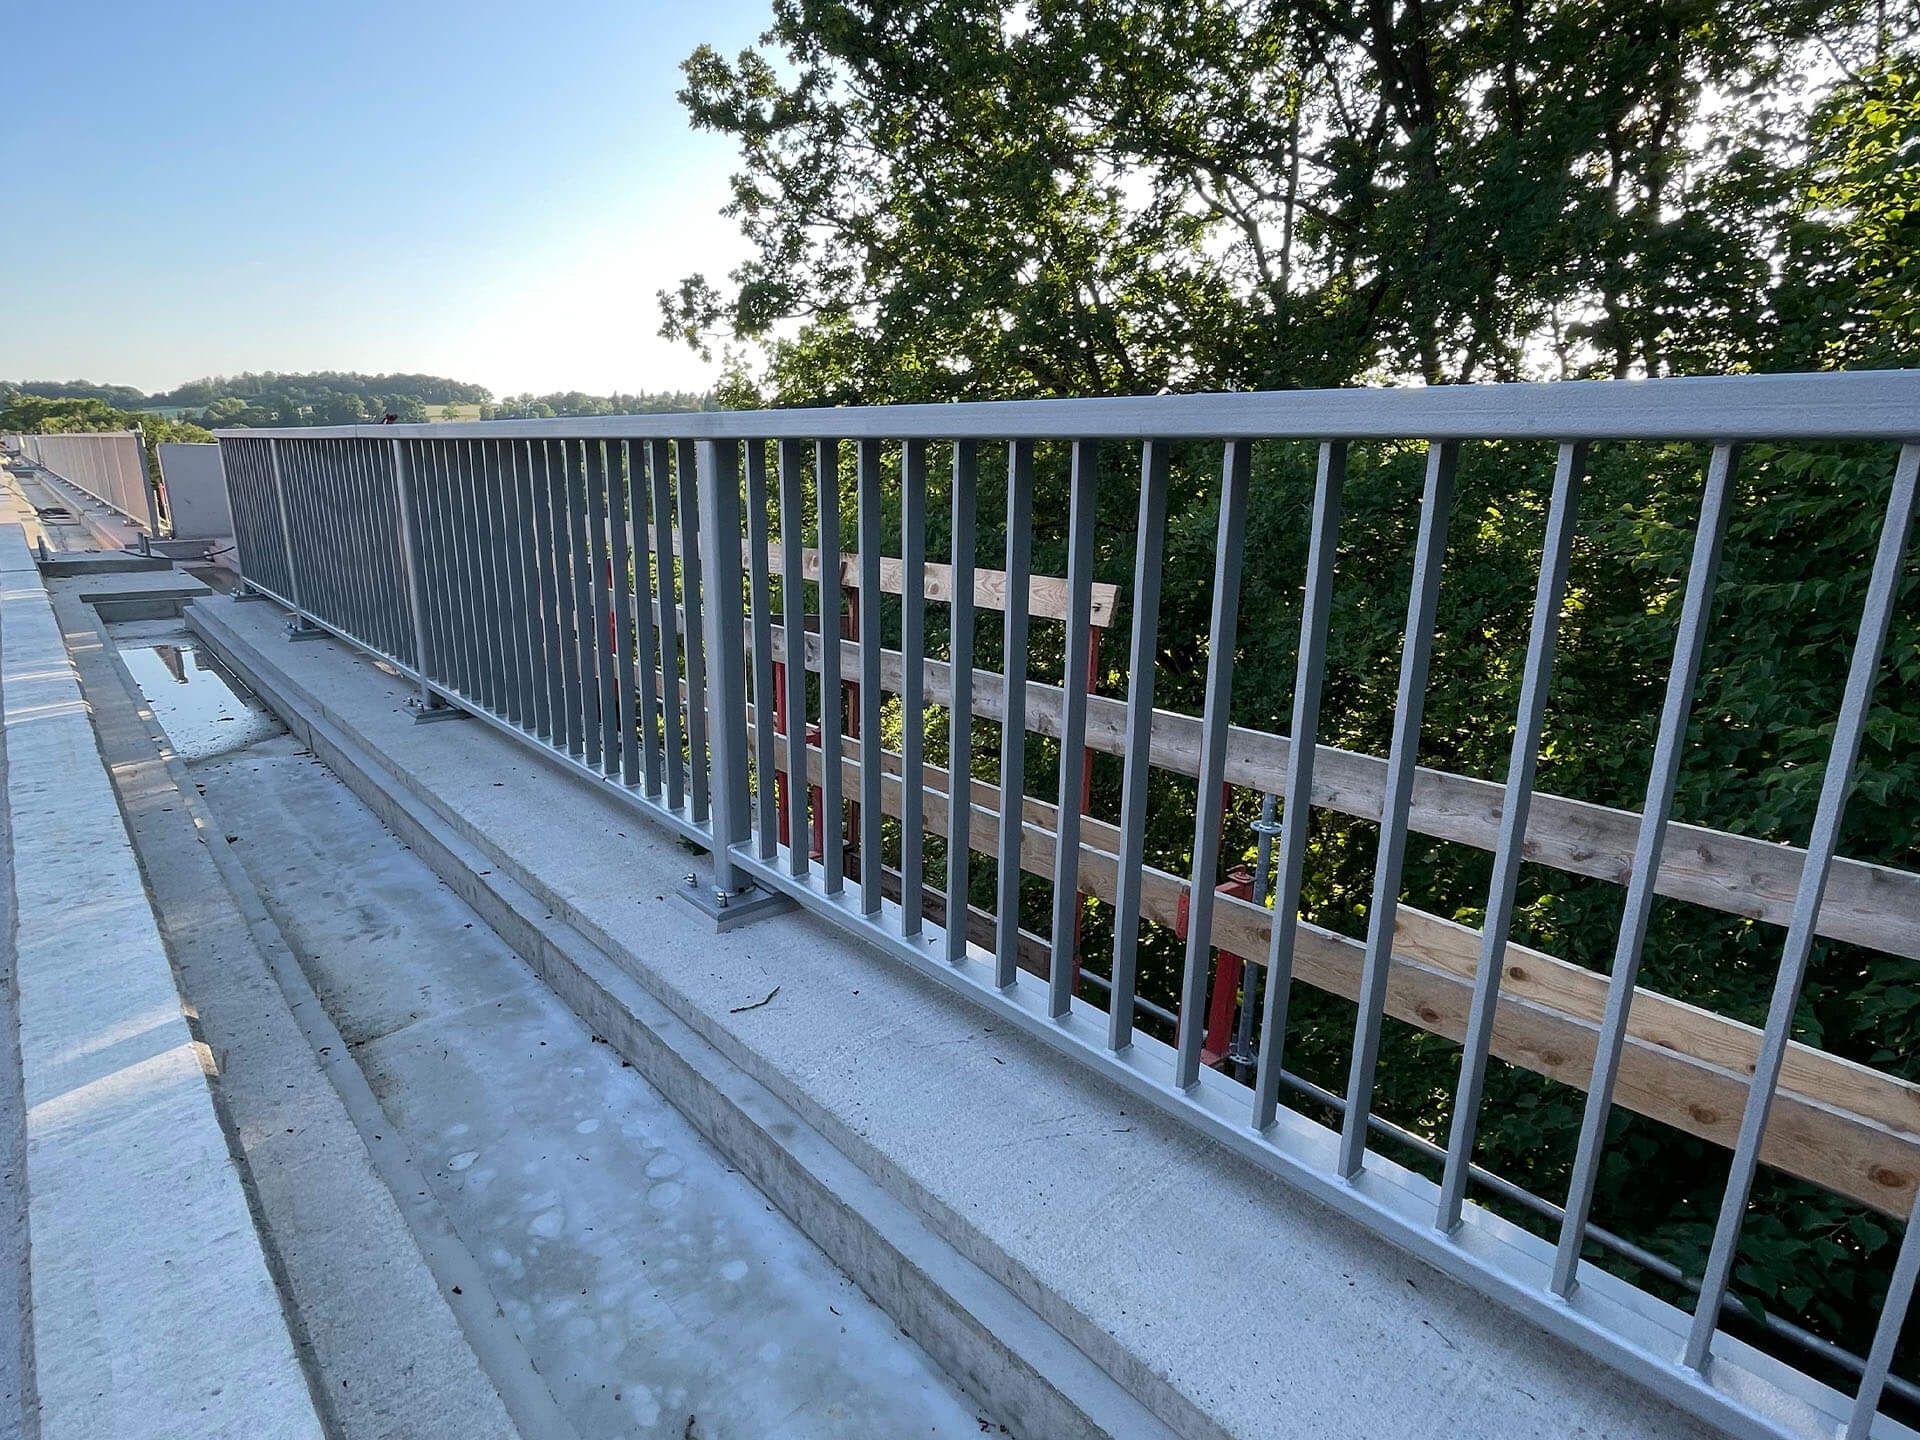 Neubau Füllstabgeländer für die Elstertalbrücke